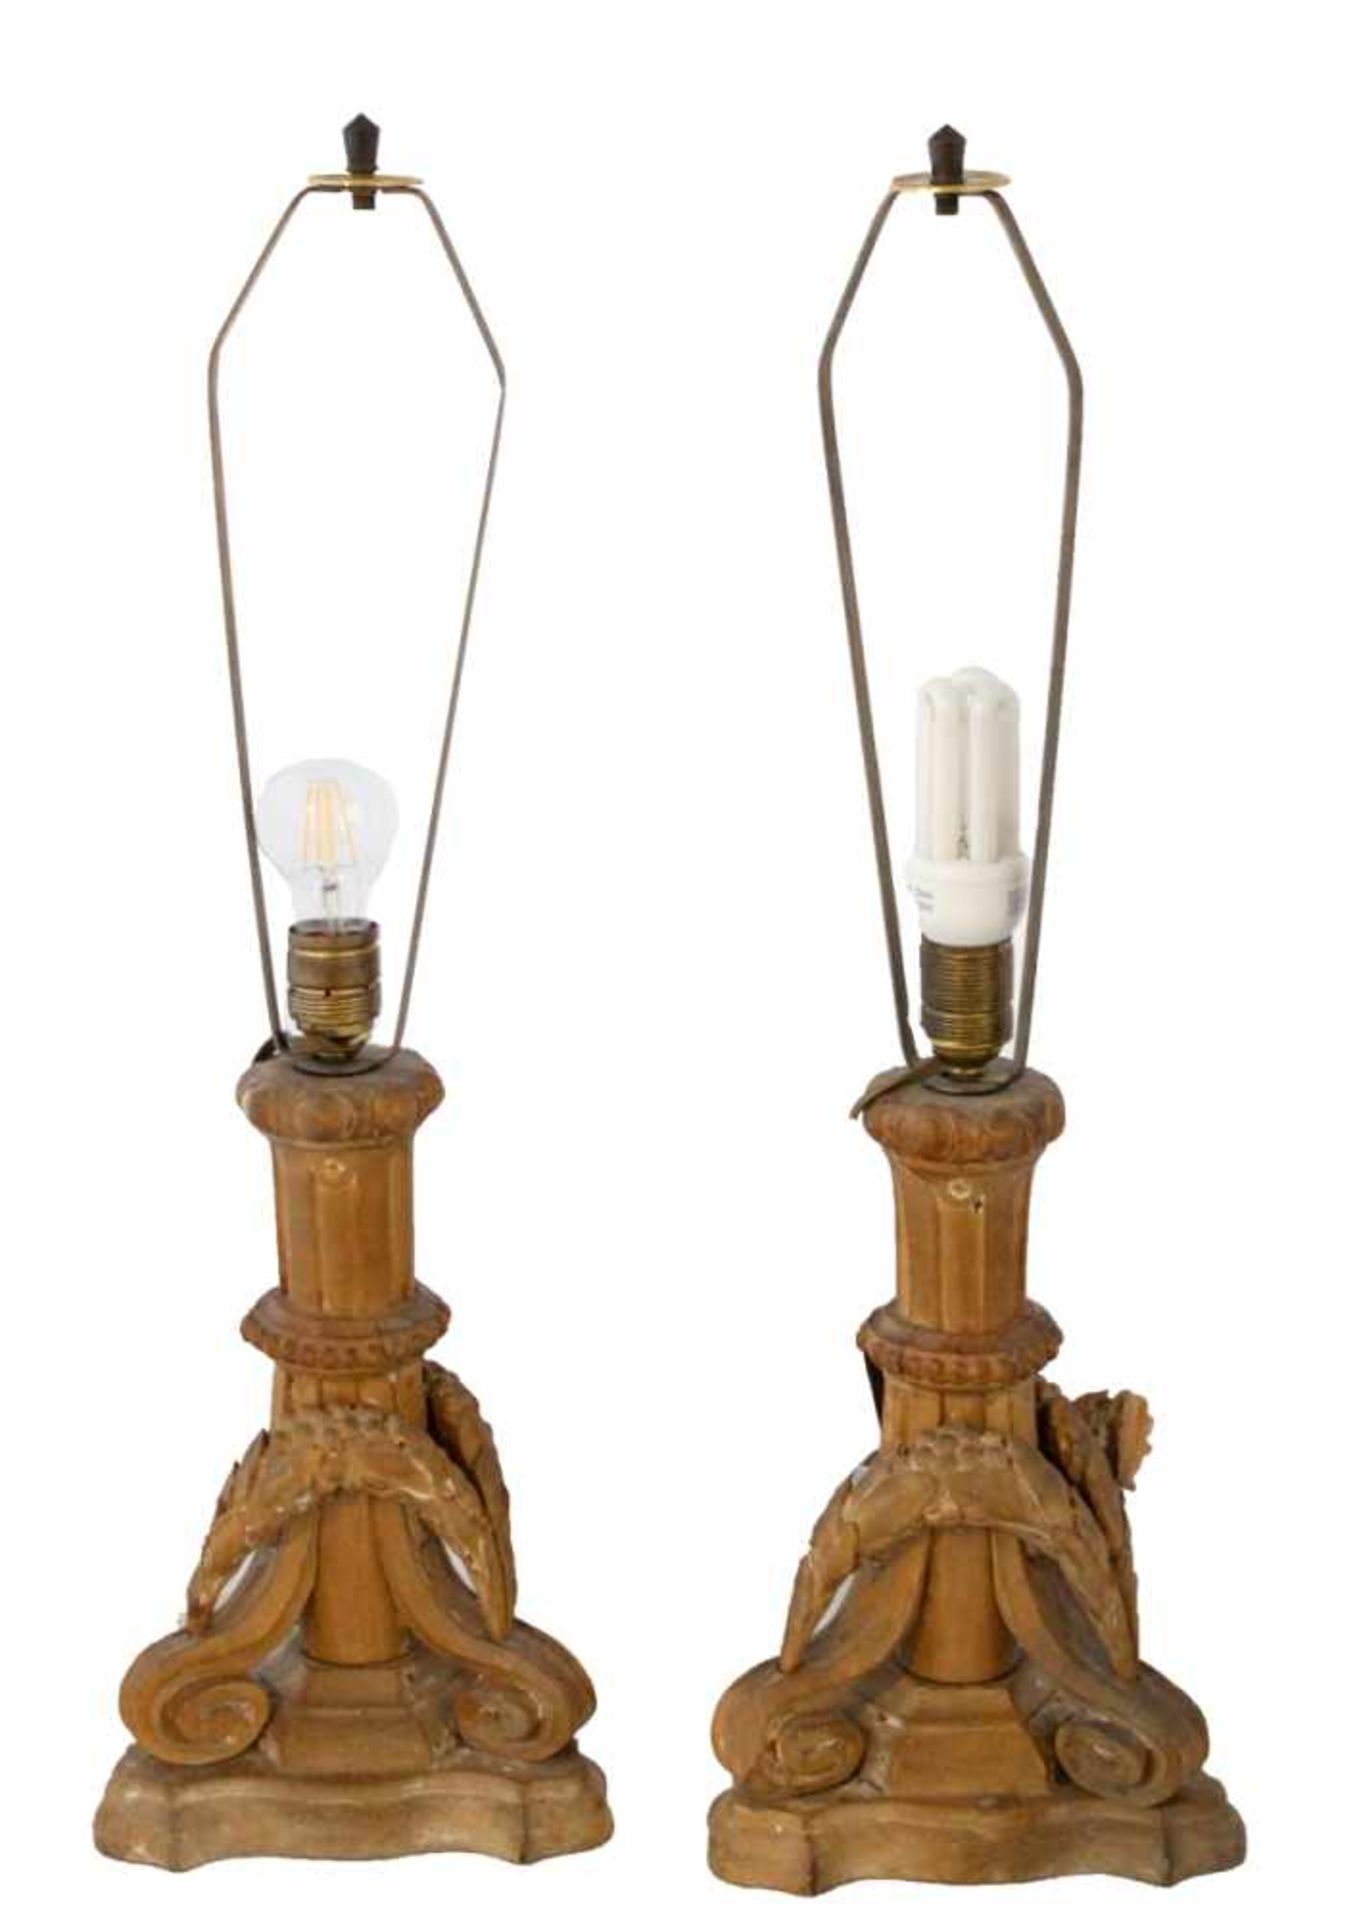 Paar Lampen - um 1800 Holz geschnitzt, verziert mit Voluten und Feston, später elektrifiziert,